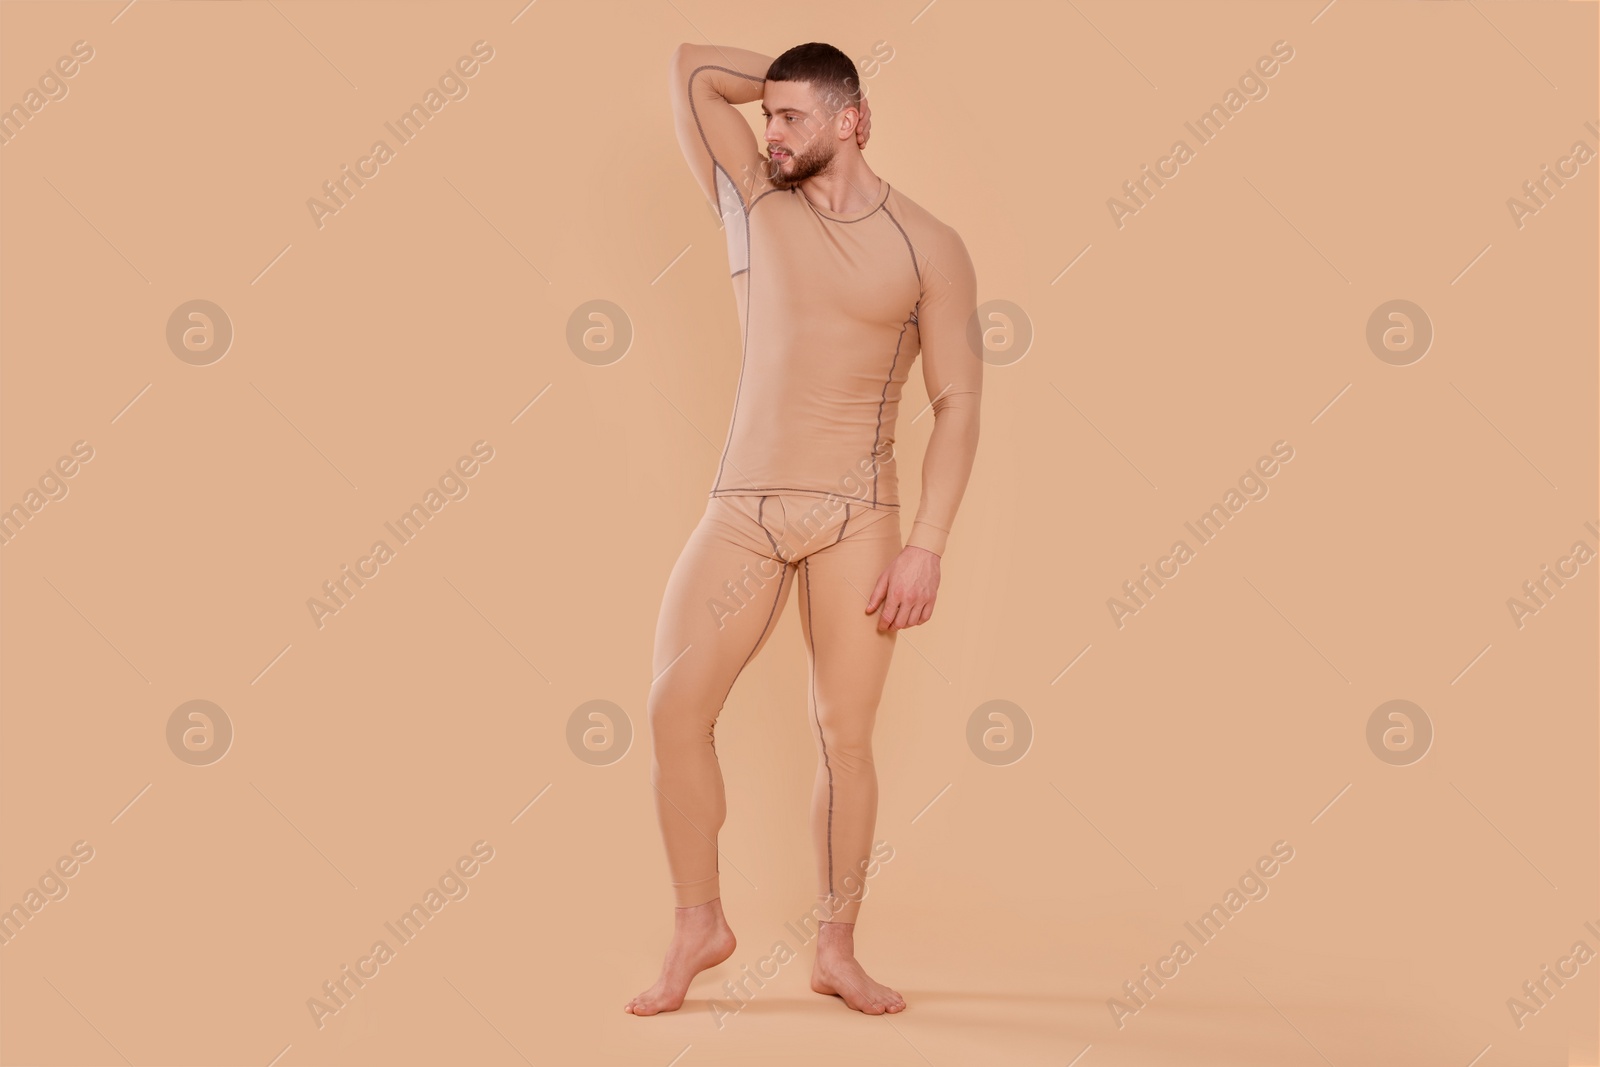 Photo of Man in warm thermal underwear on beige background